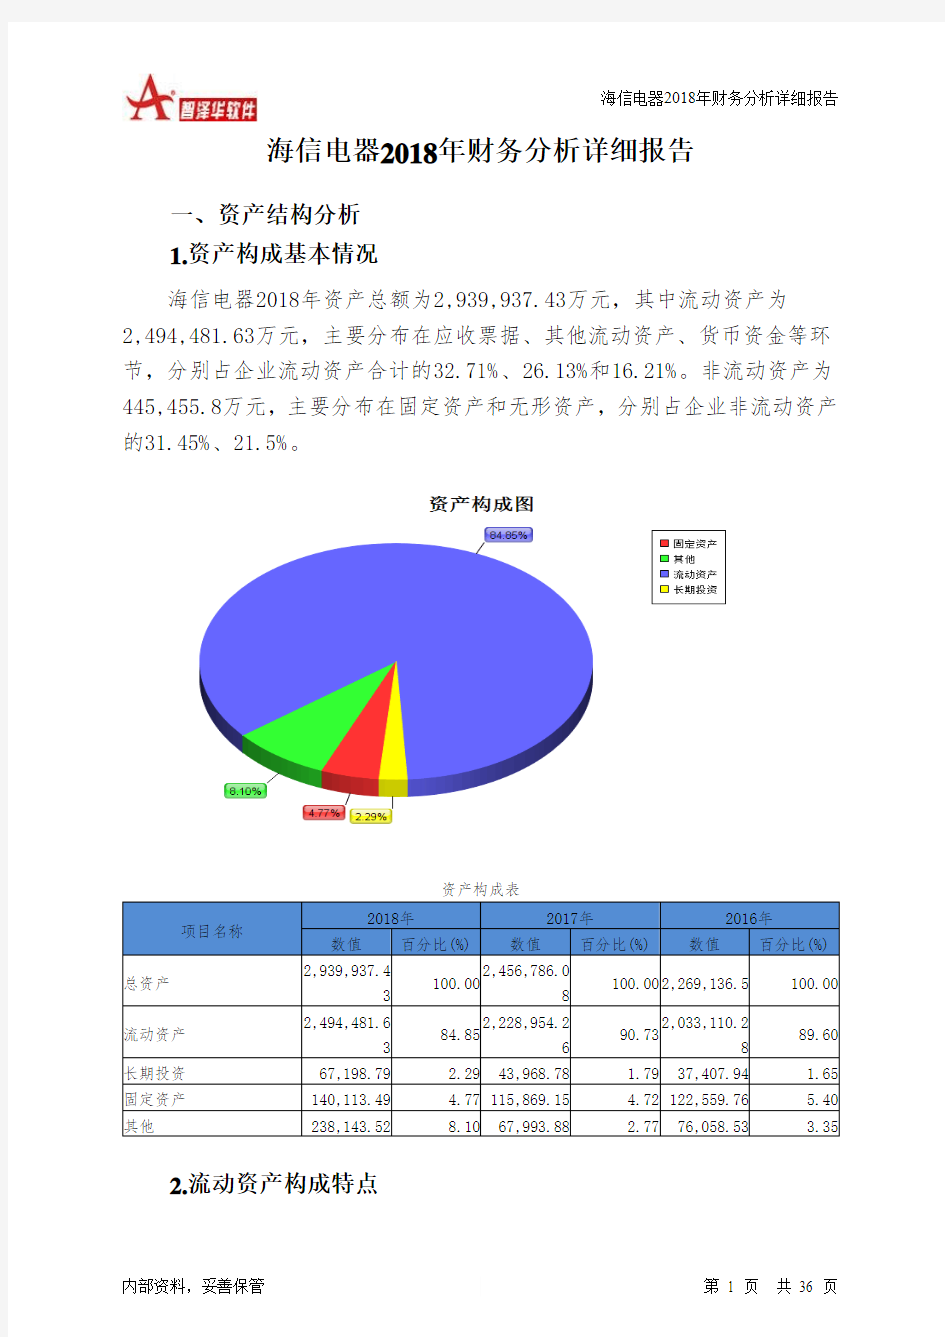 海信电器2018年财务分析详细报告-智泽华